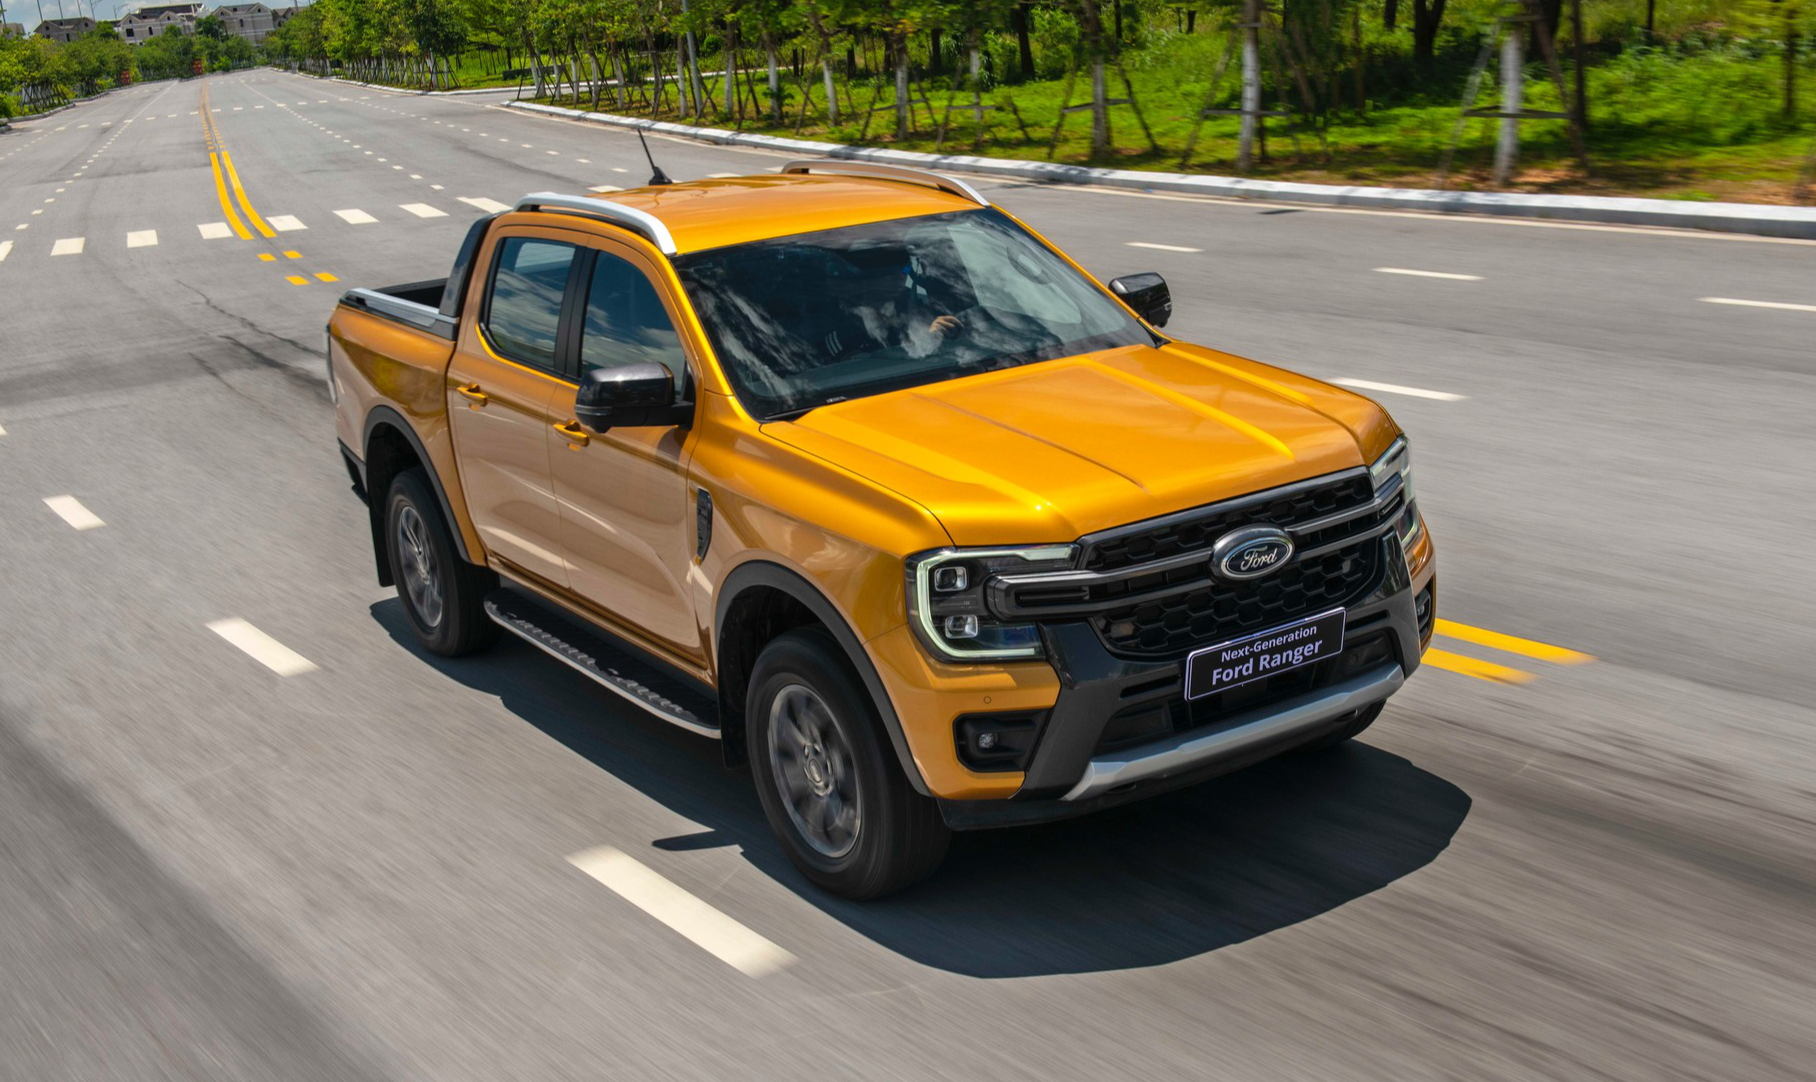 Xe bán tải tại Việt Nam: Doanh số giảm gần 30%, Ford Ranger dẫn đầu - Ảnh 2.